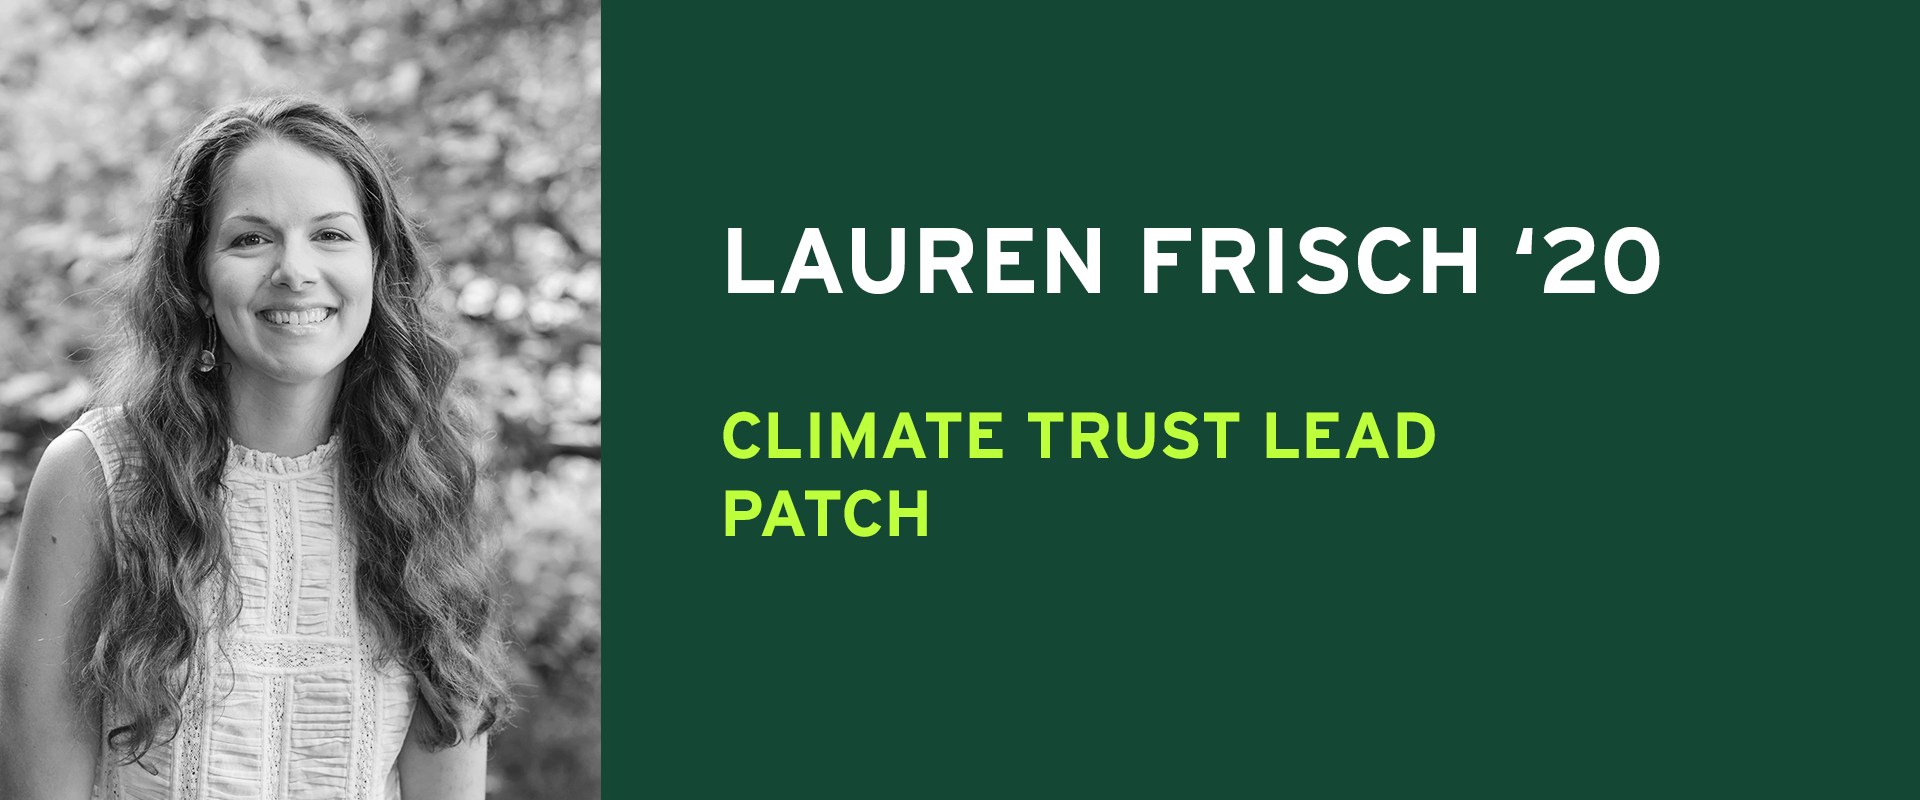 Lauren Frisch 20 Climate Trust Lead Patch